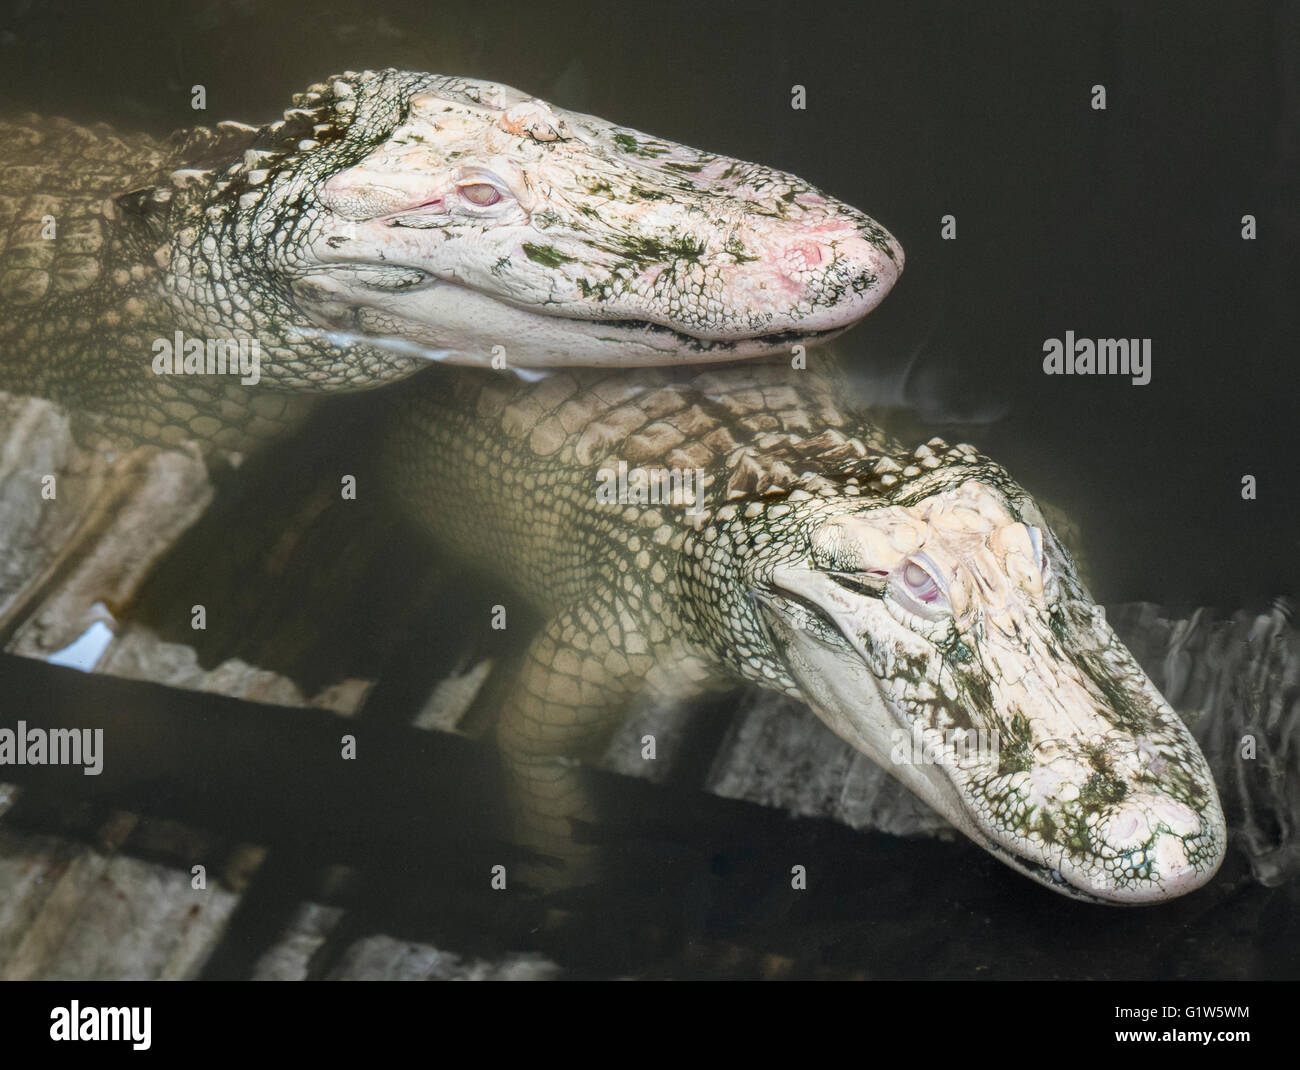 Rare albino alligators, Colorado Gators Reptile Park, Mosca, Colorado. Stock Photo